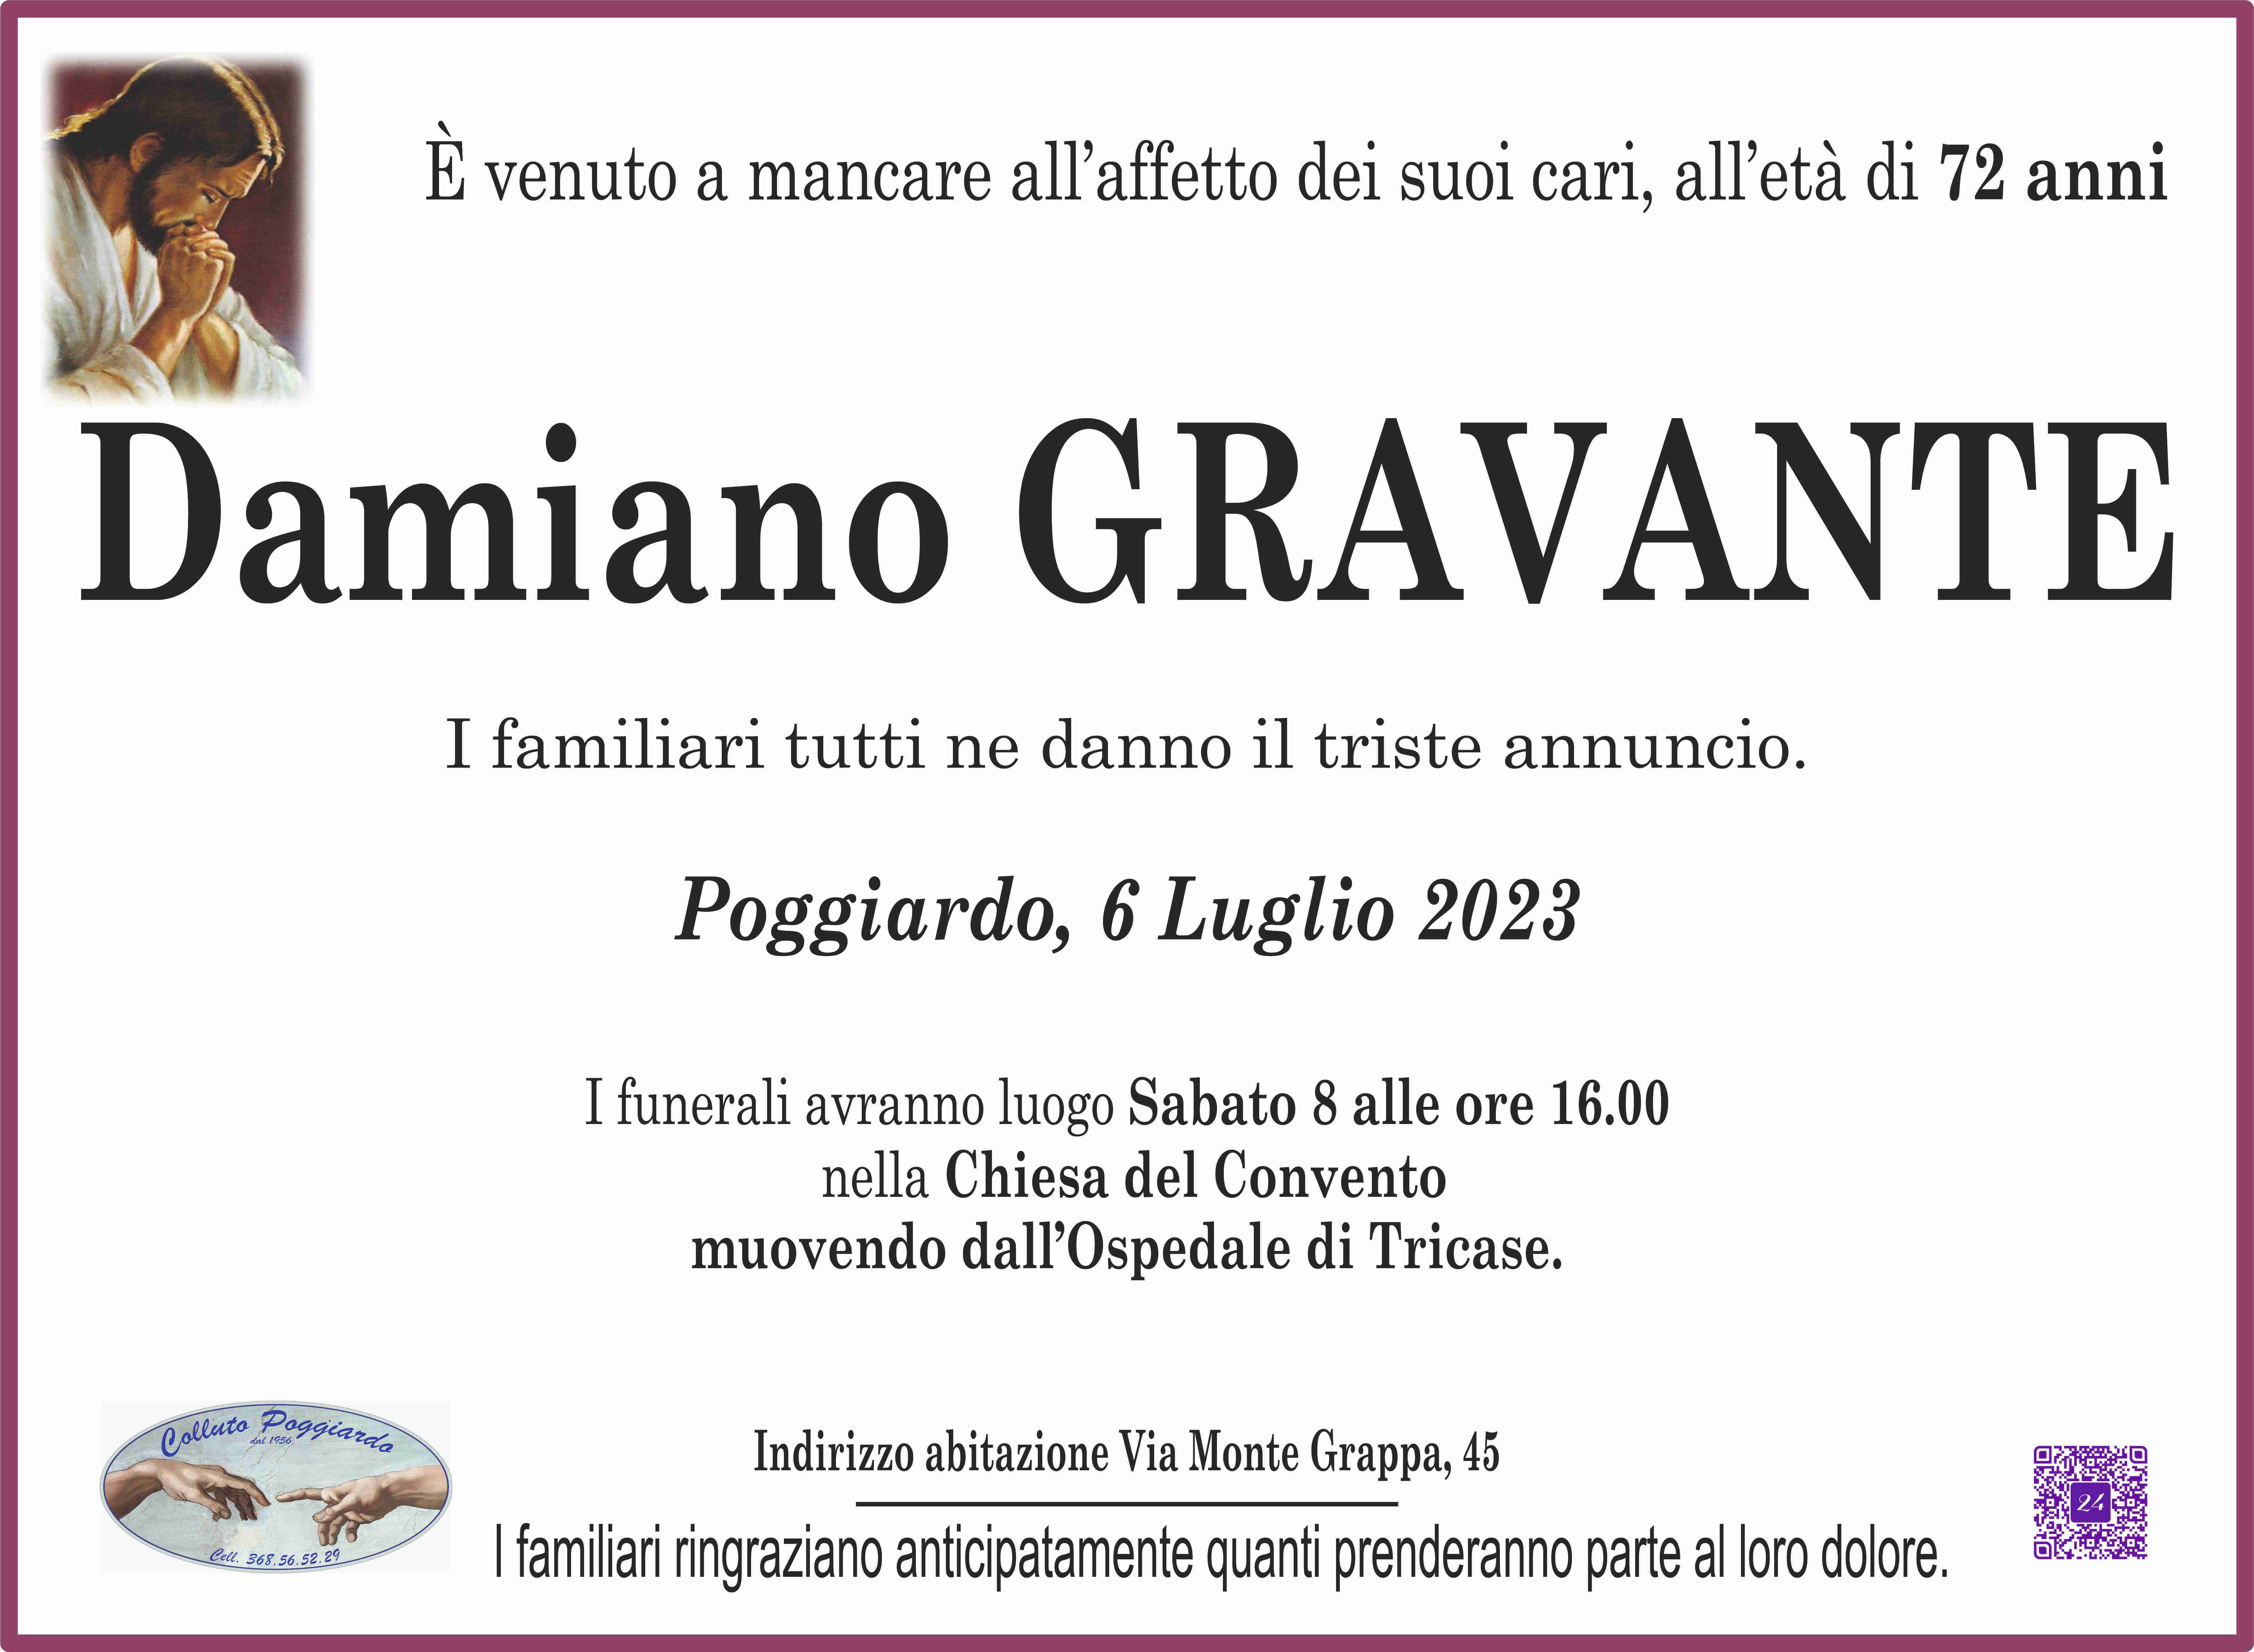 Damiano Gravante